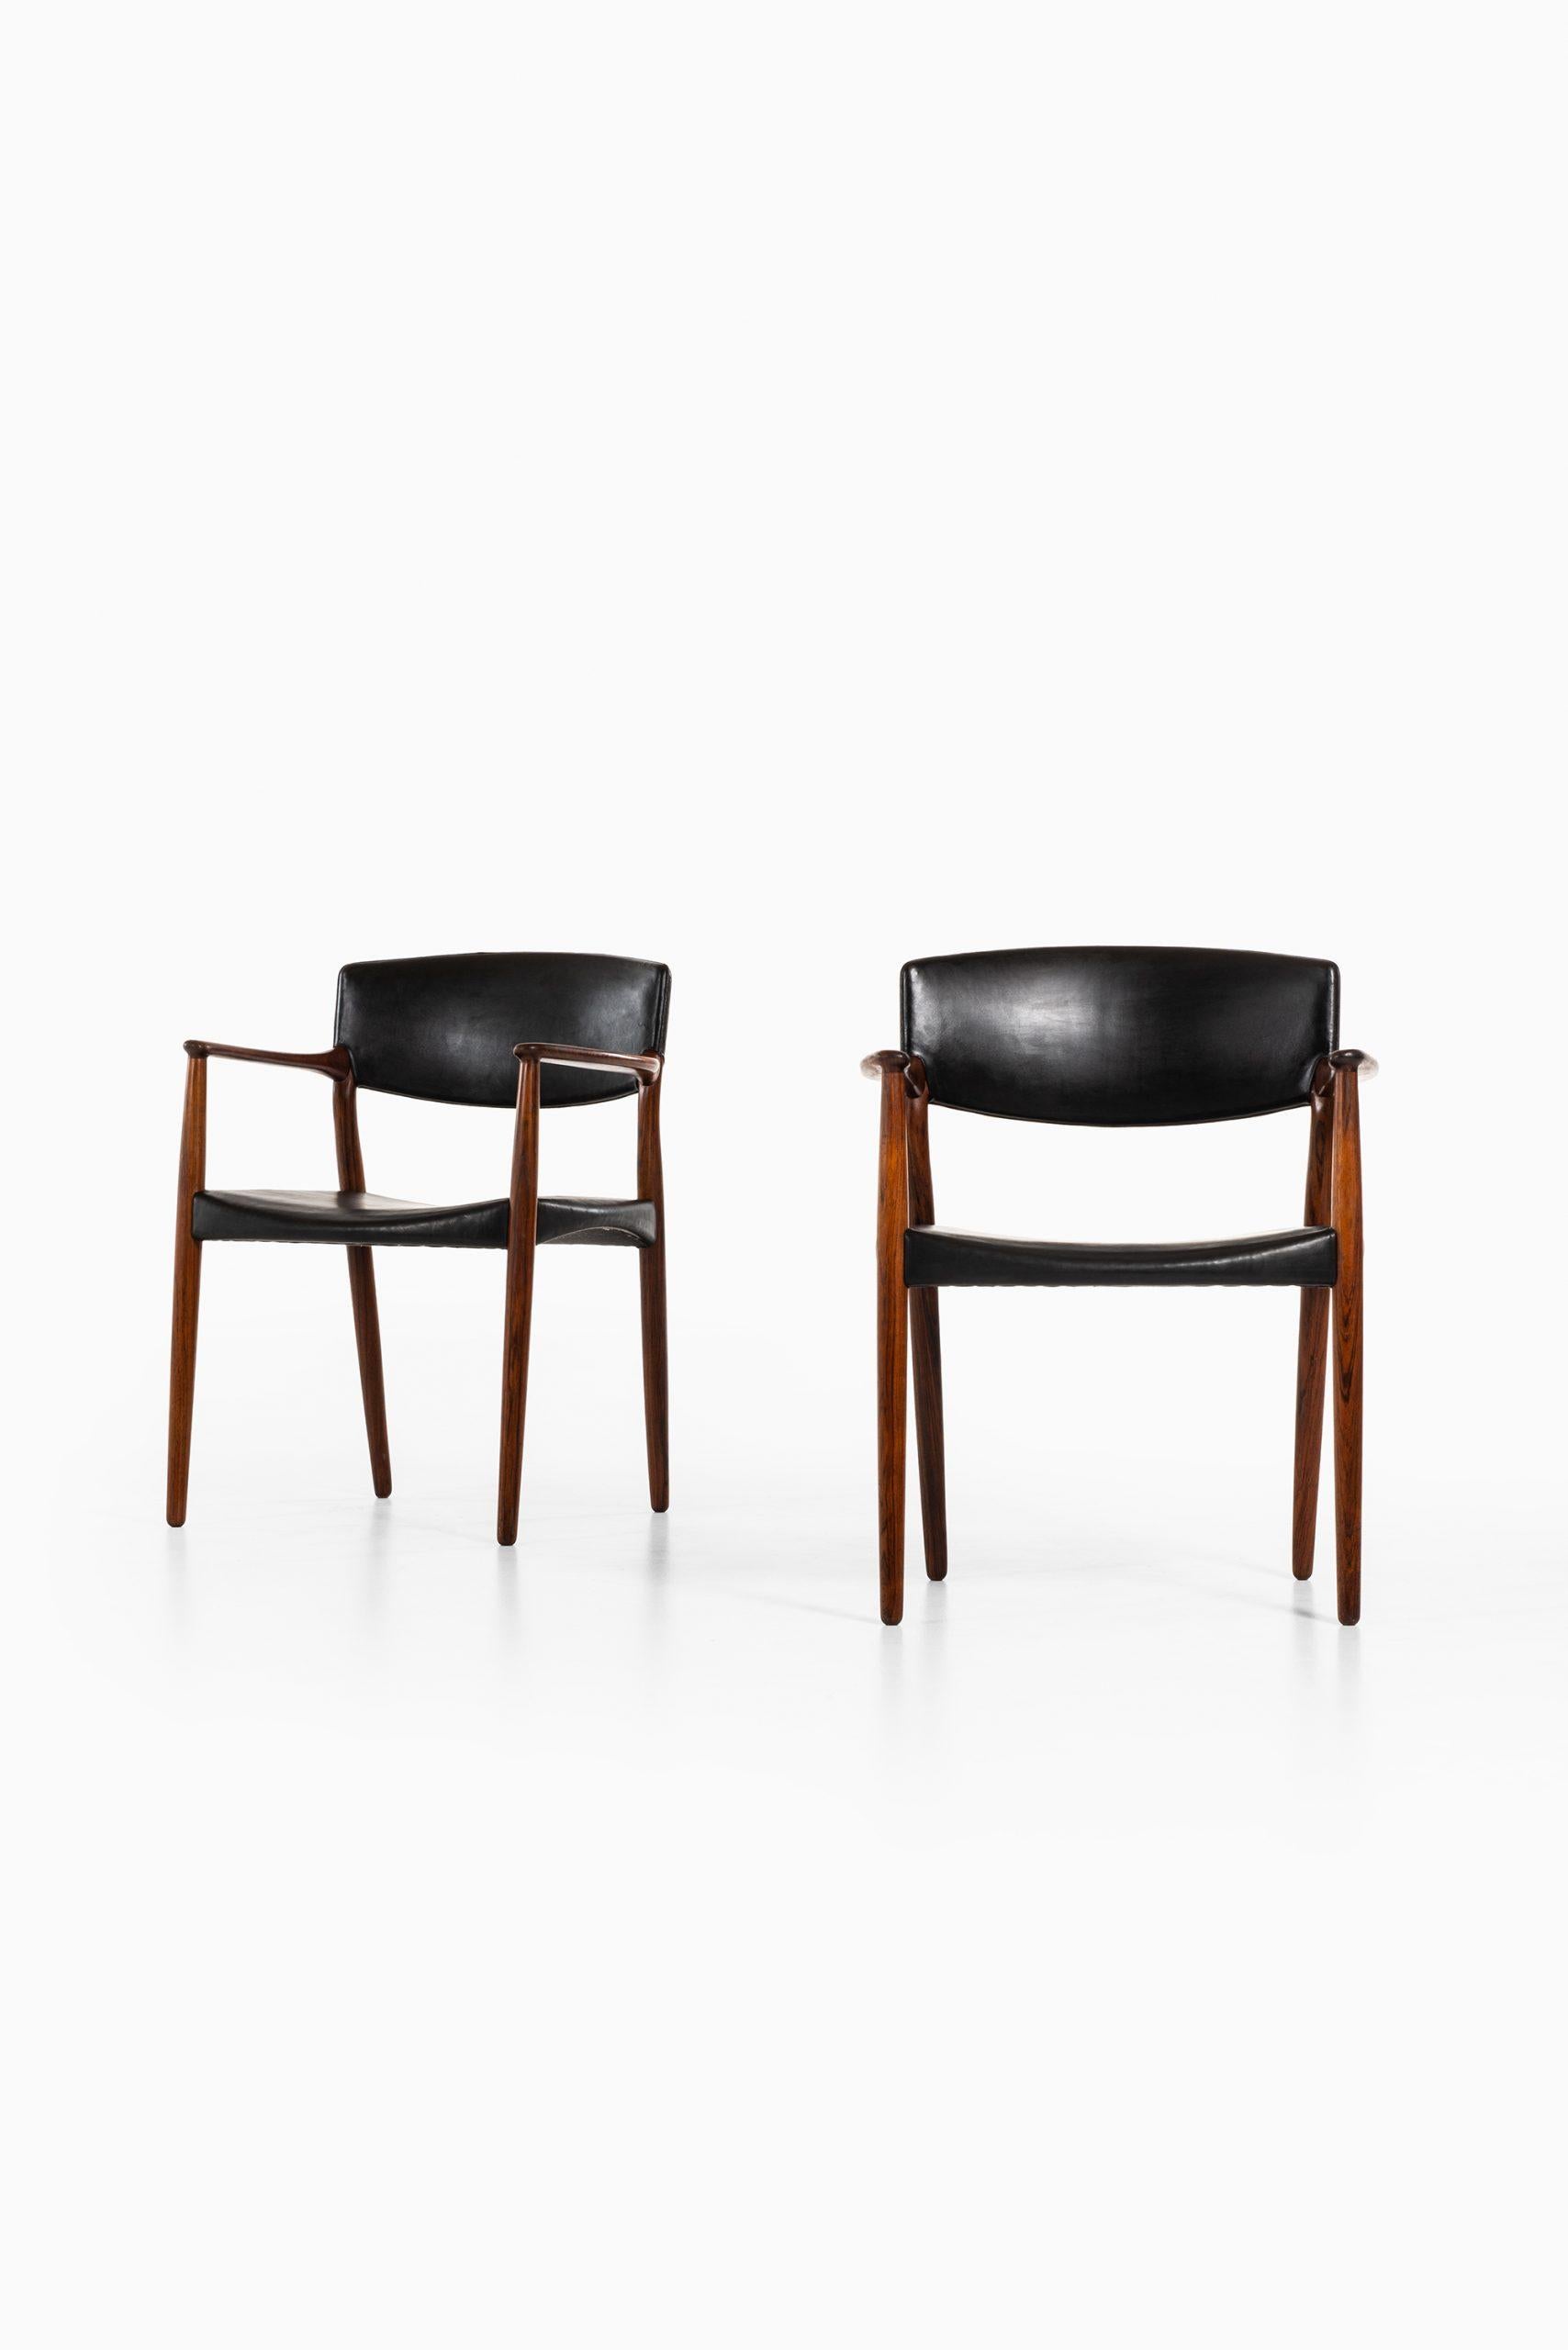 Seltenes Sesselpaar, entworfen von Aksel Bender Madsen & Ejner Larsen. Hergestellt von der Tischlerei Willy Beck in Dänemark.